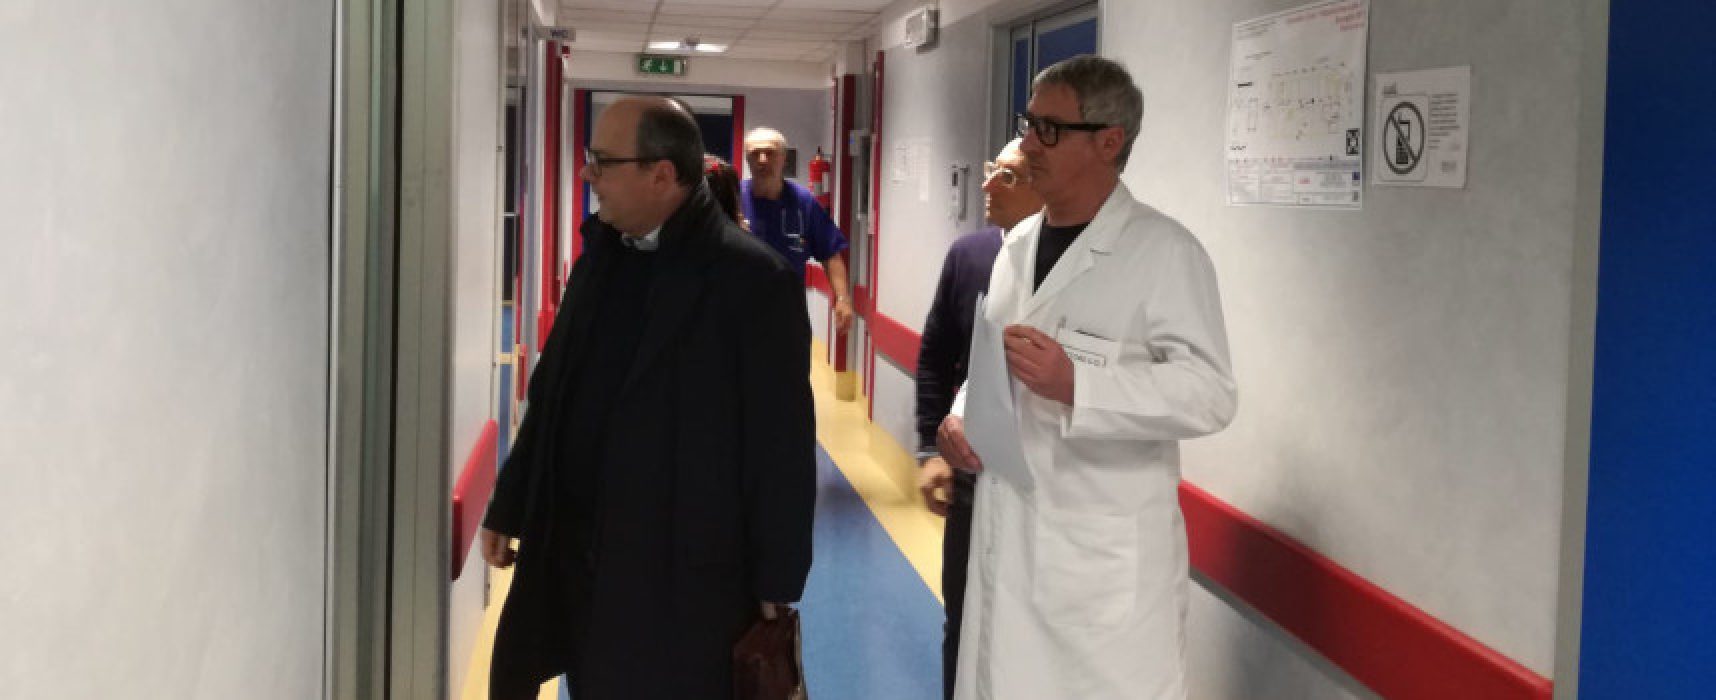 Direttore Asl Bat visita ospedale di Bisceglie: “Presto lavori al Pronto Soccorso”